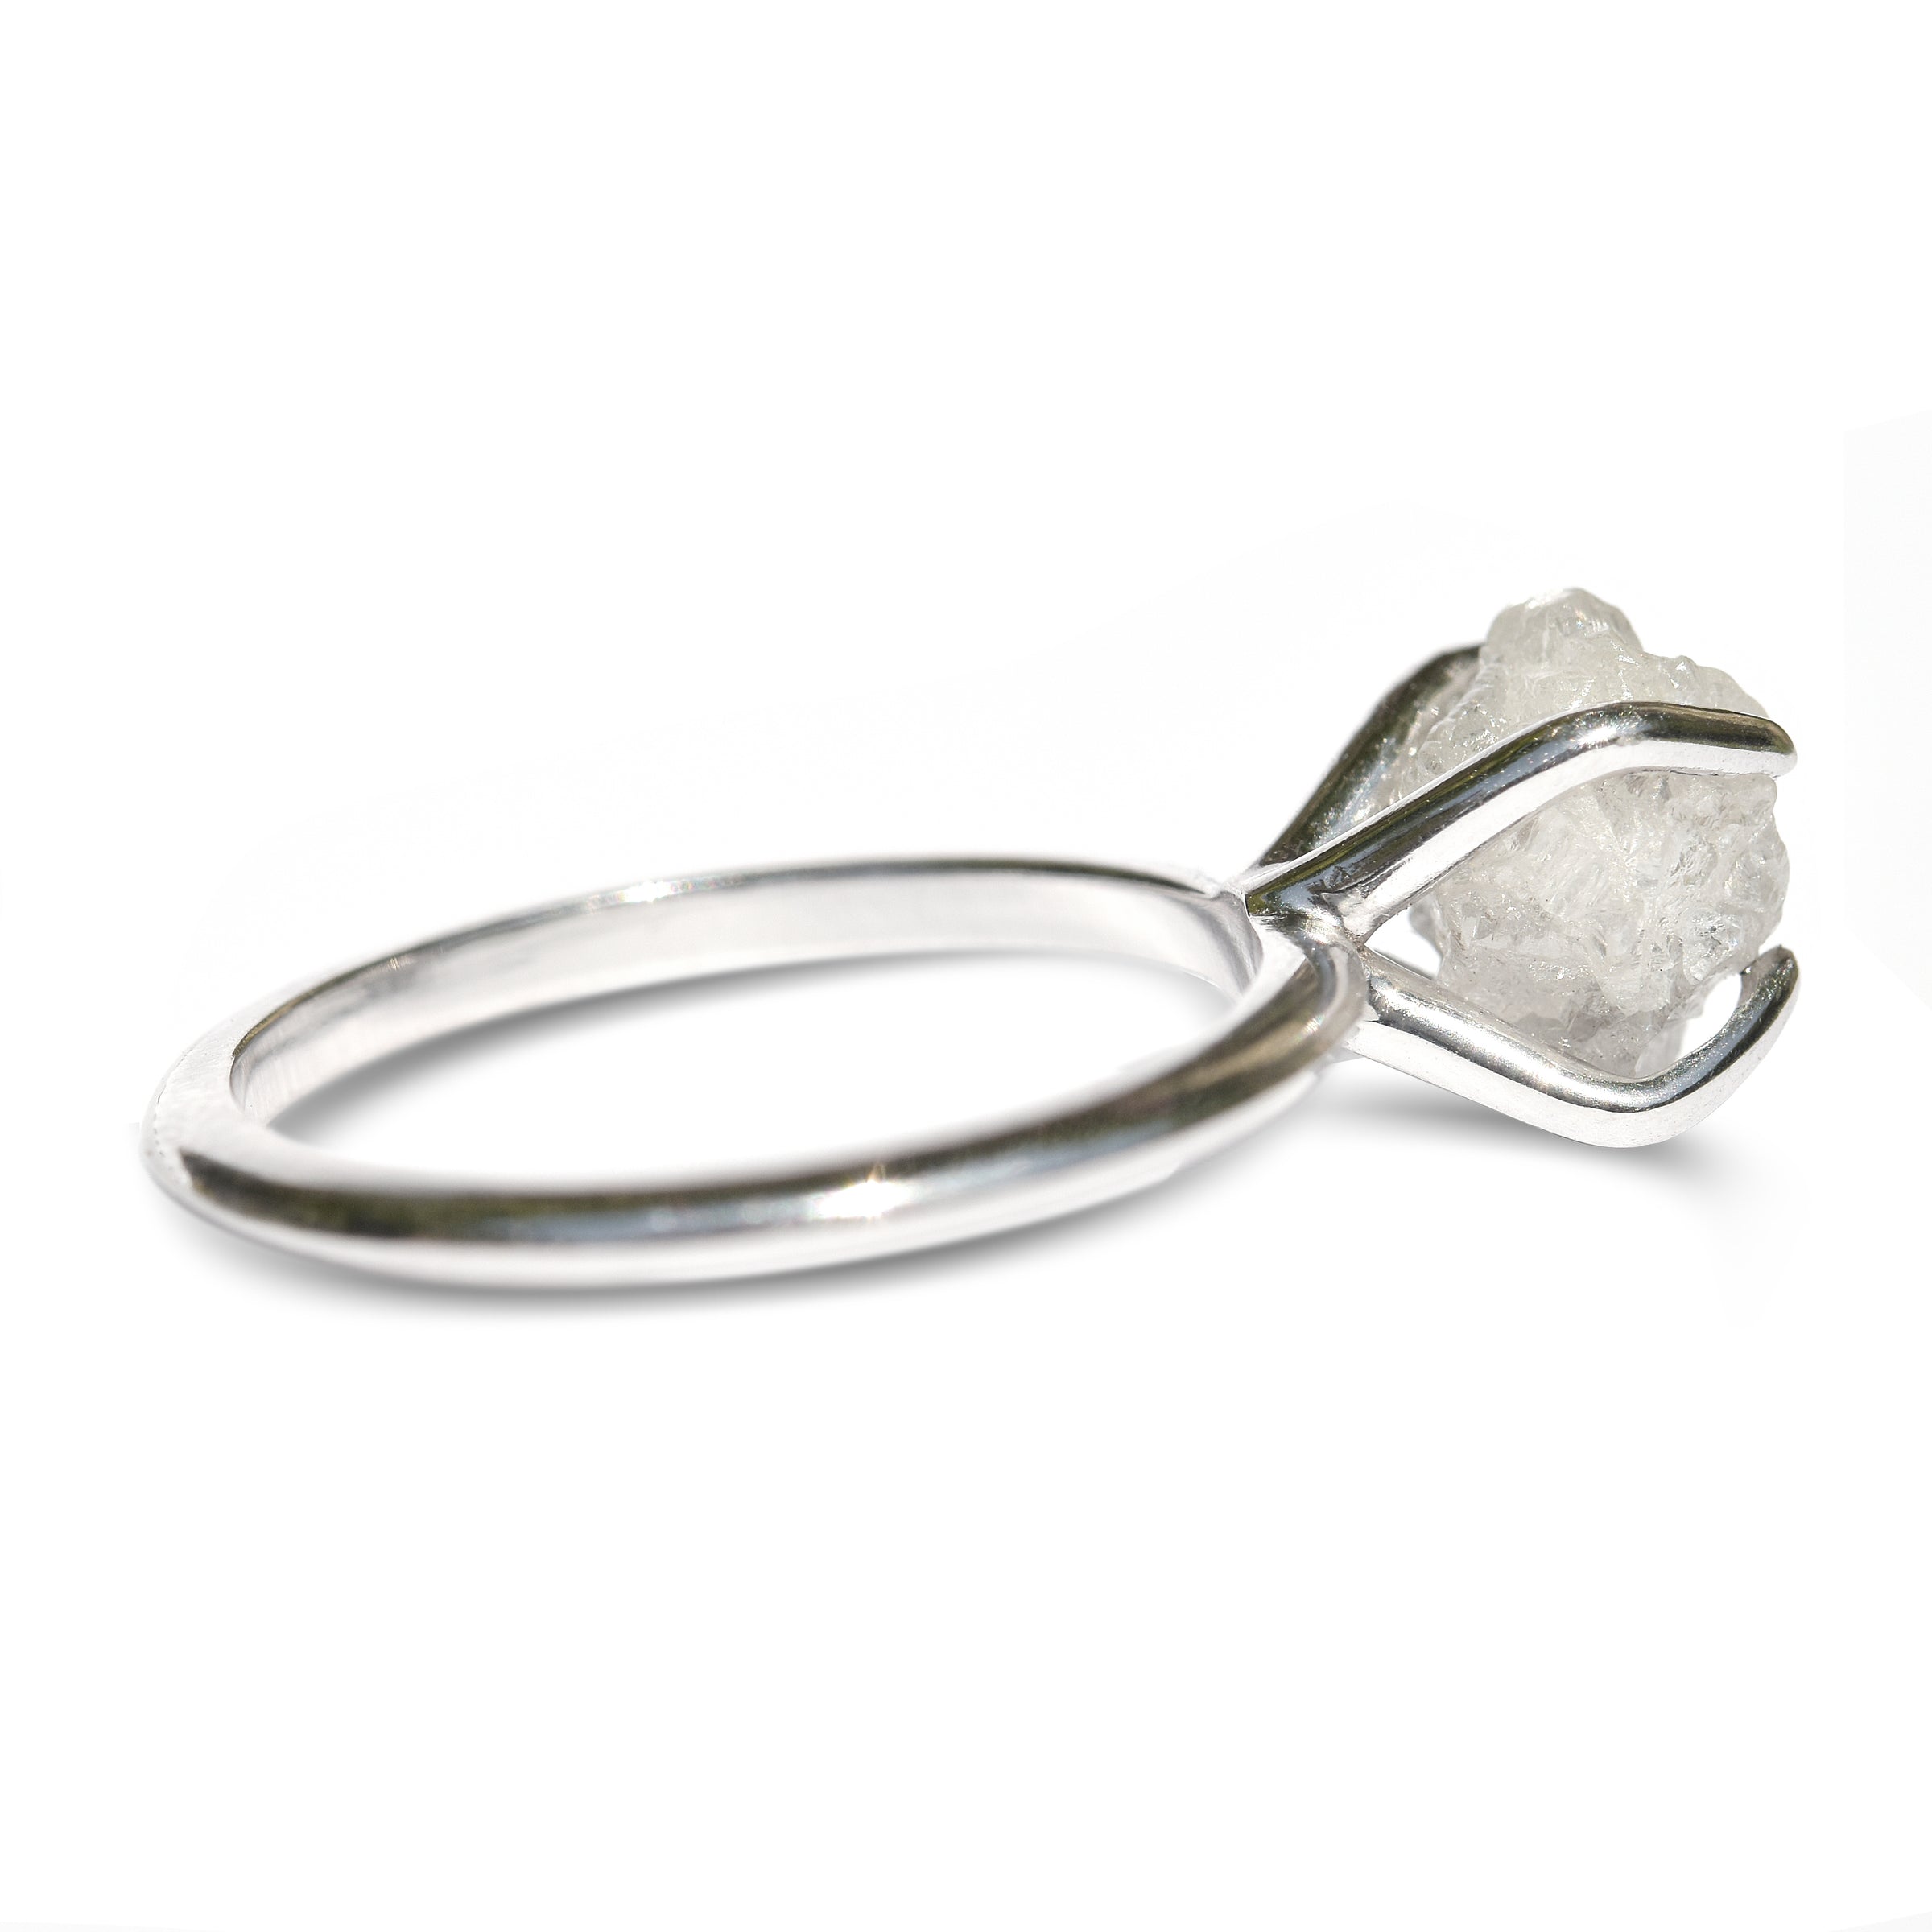 Buy Viraaz Uncut Diamond 18 KT Rose Gold Cocktail Ring for Women Online